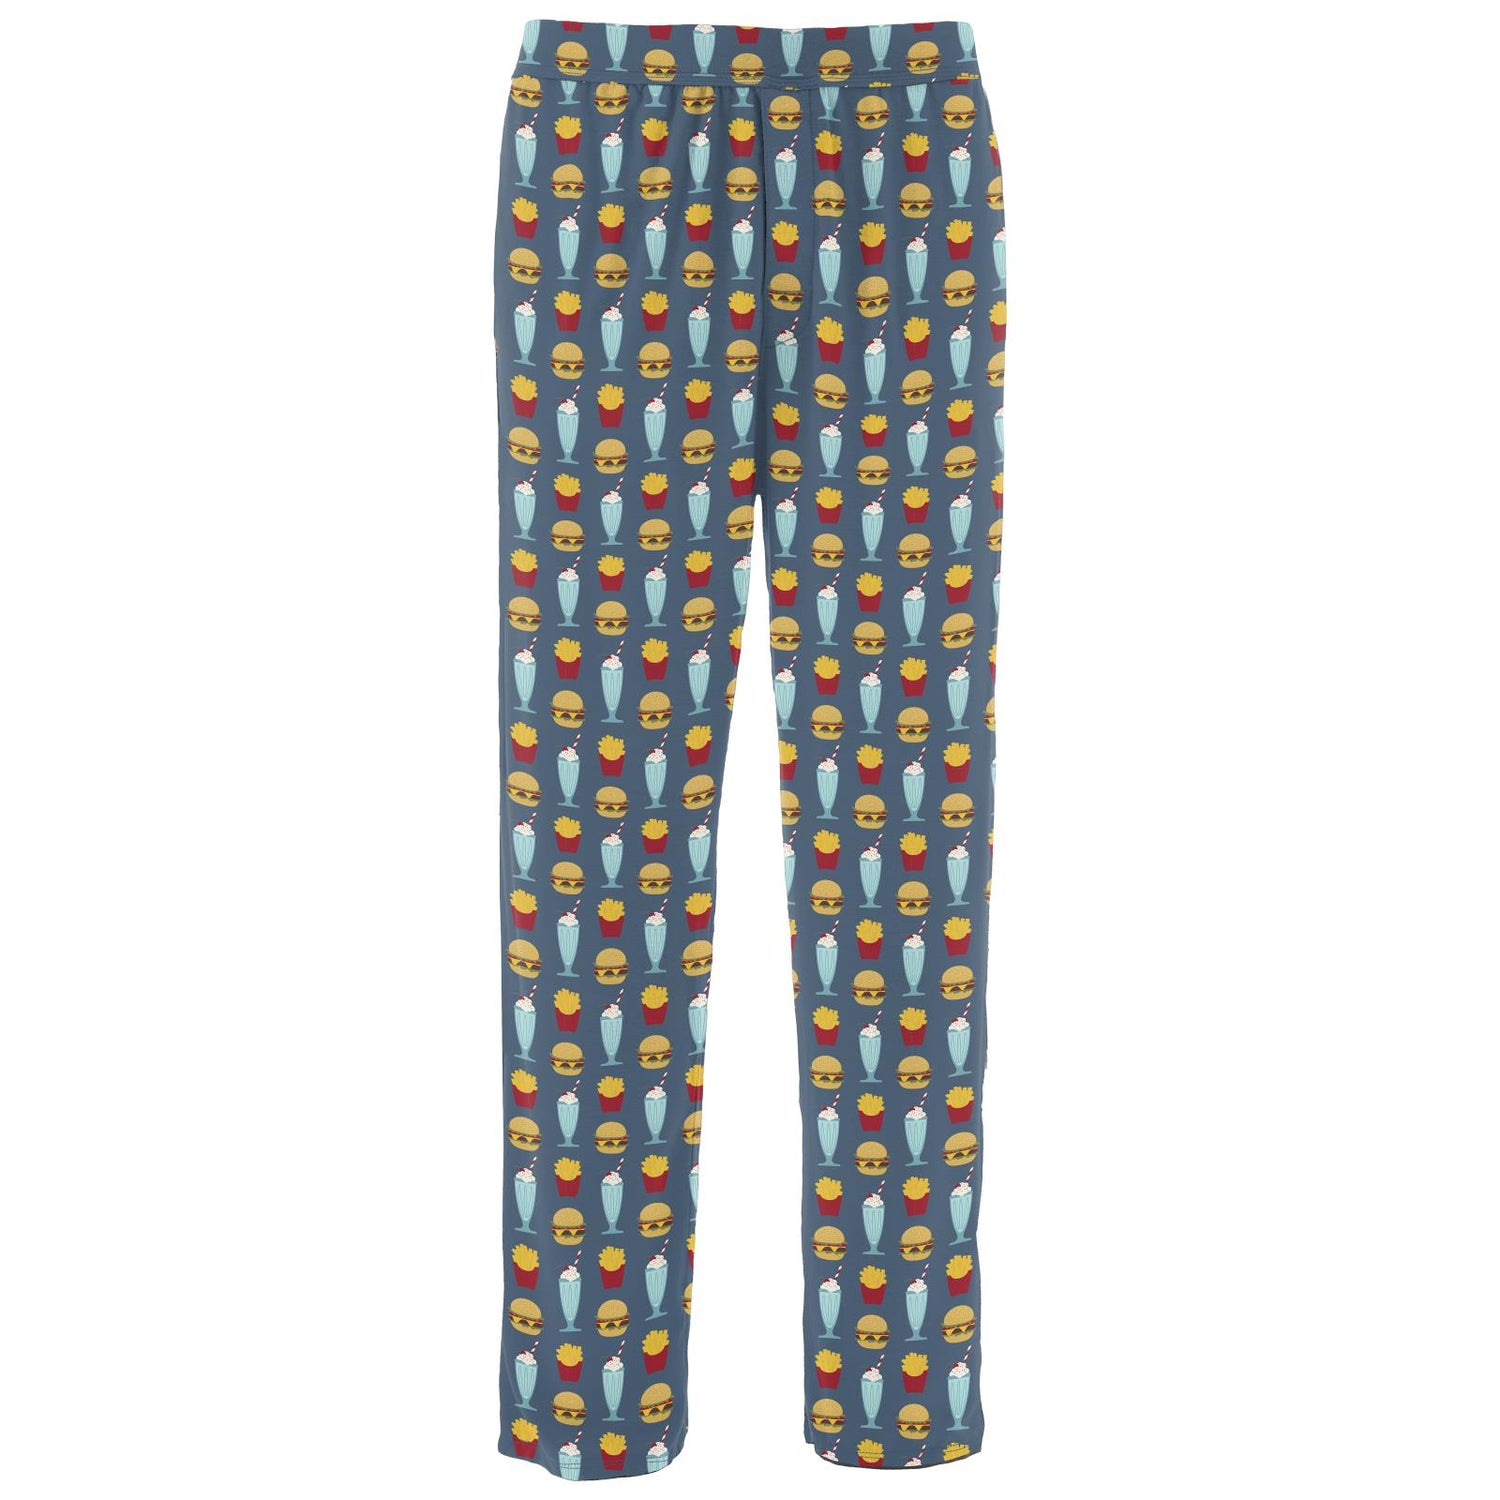 Men's Print Pajama Pants in Deep Sea Cheeseburger